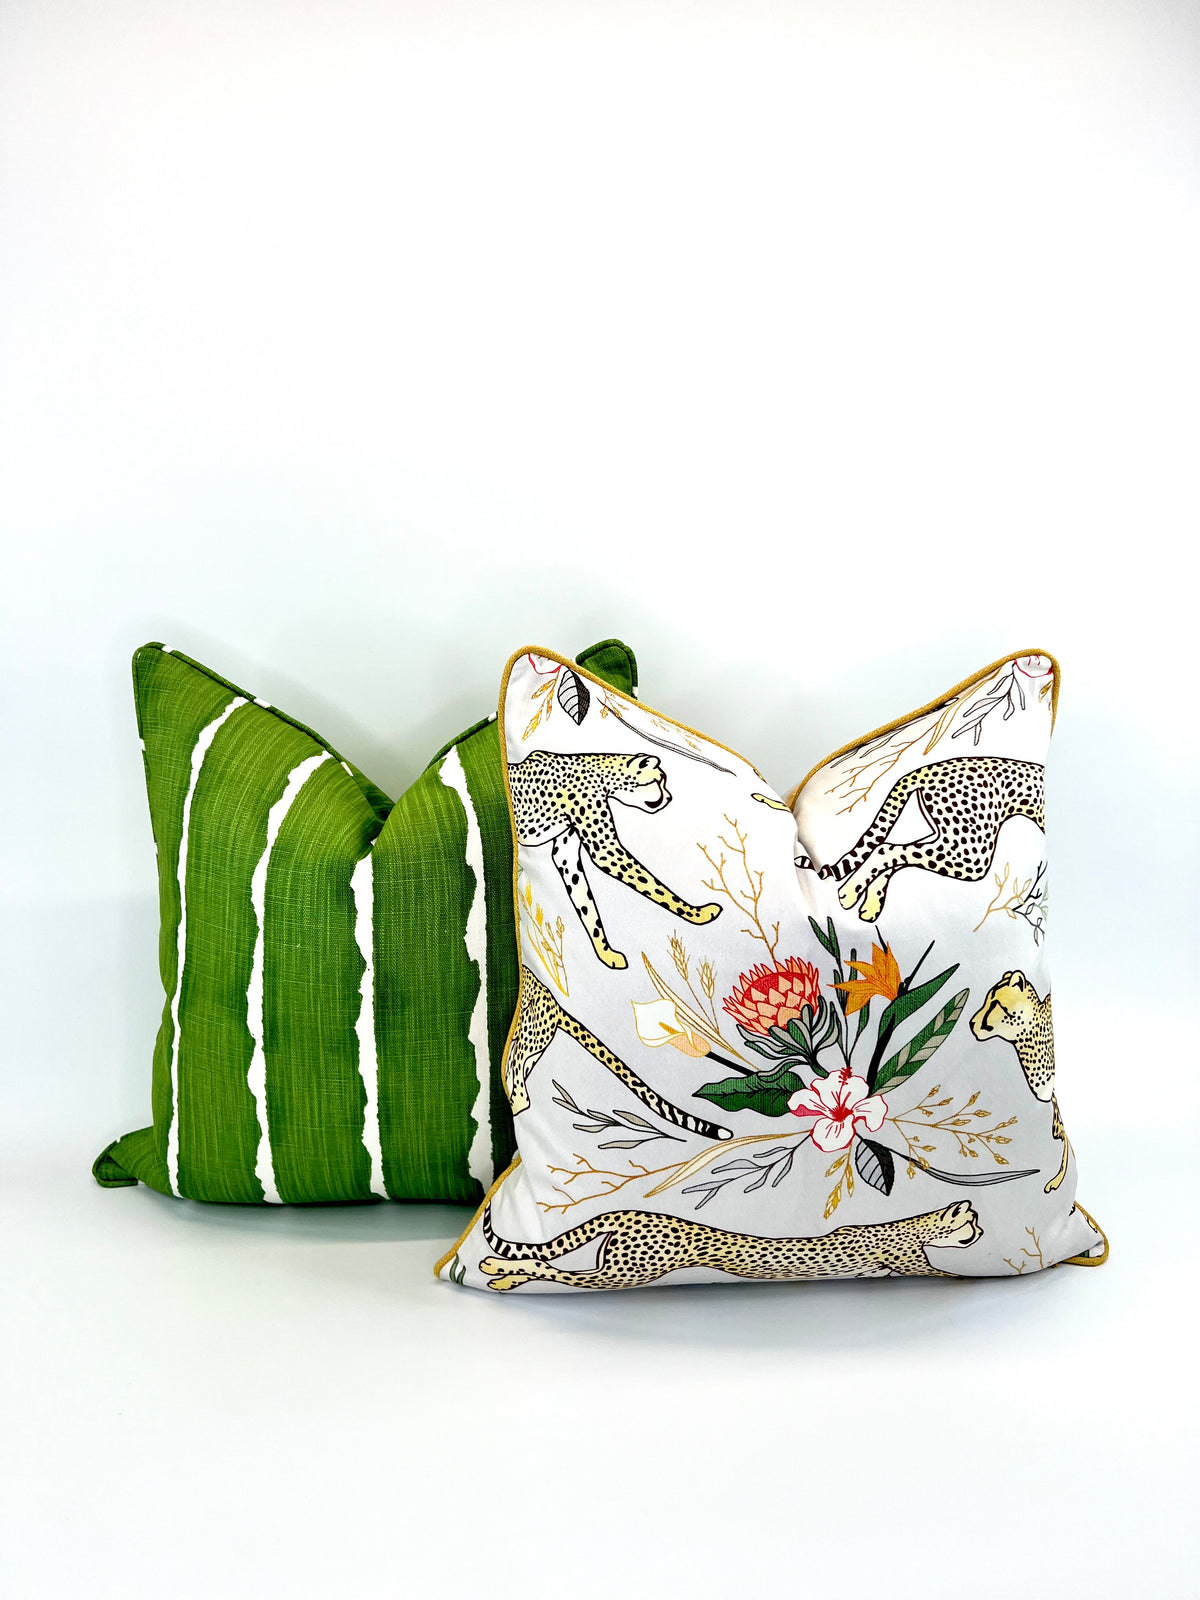 Decorative Pillow Cover in Cheetah Boundless Safari Print